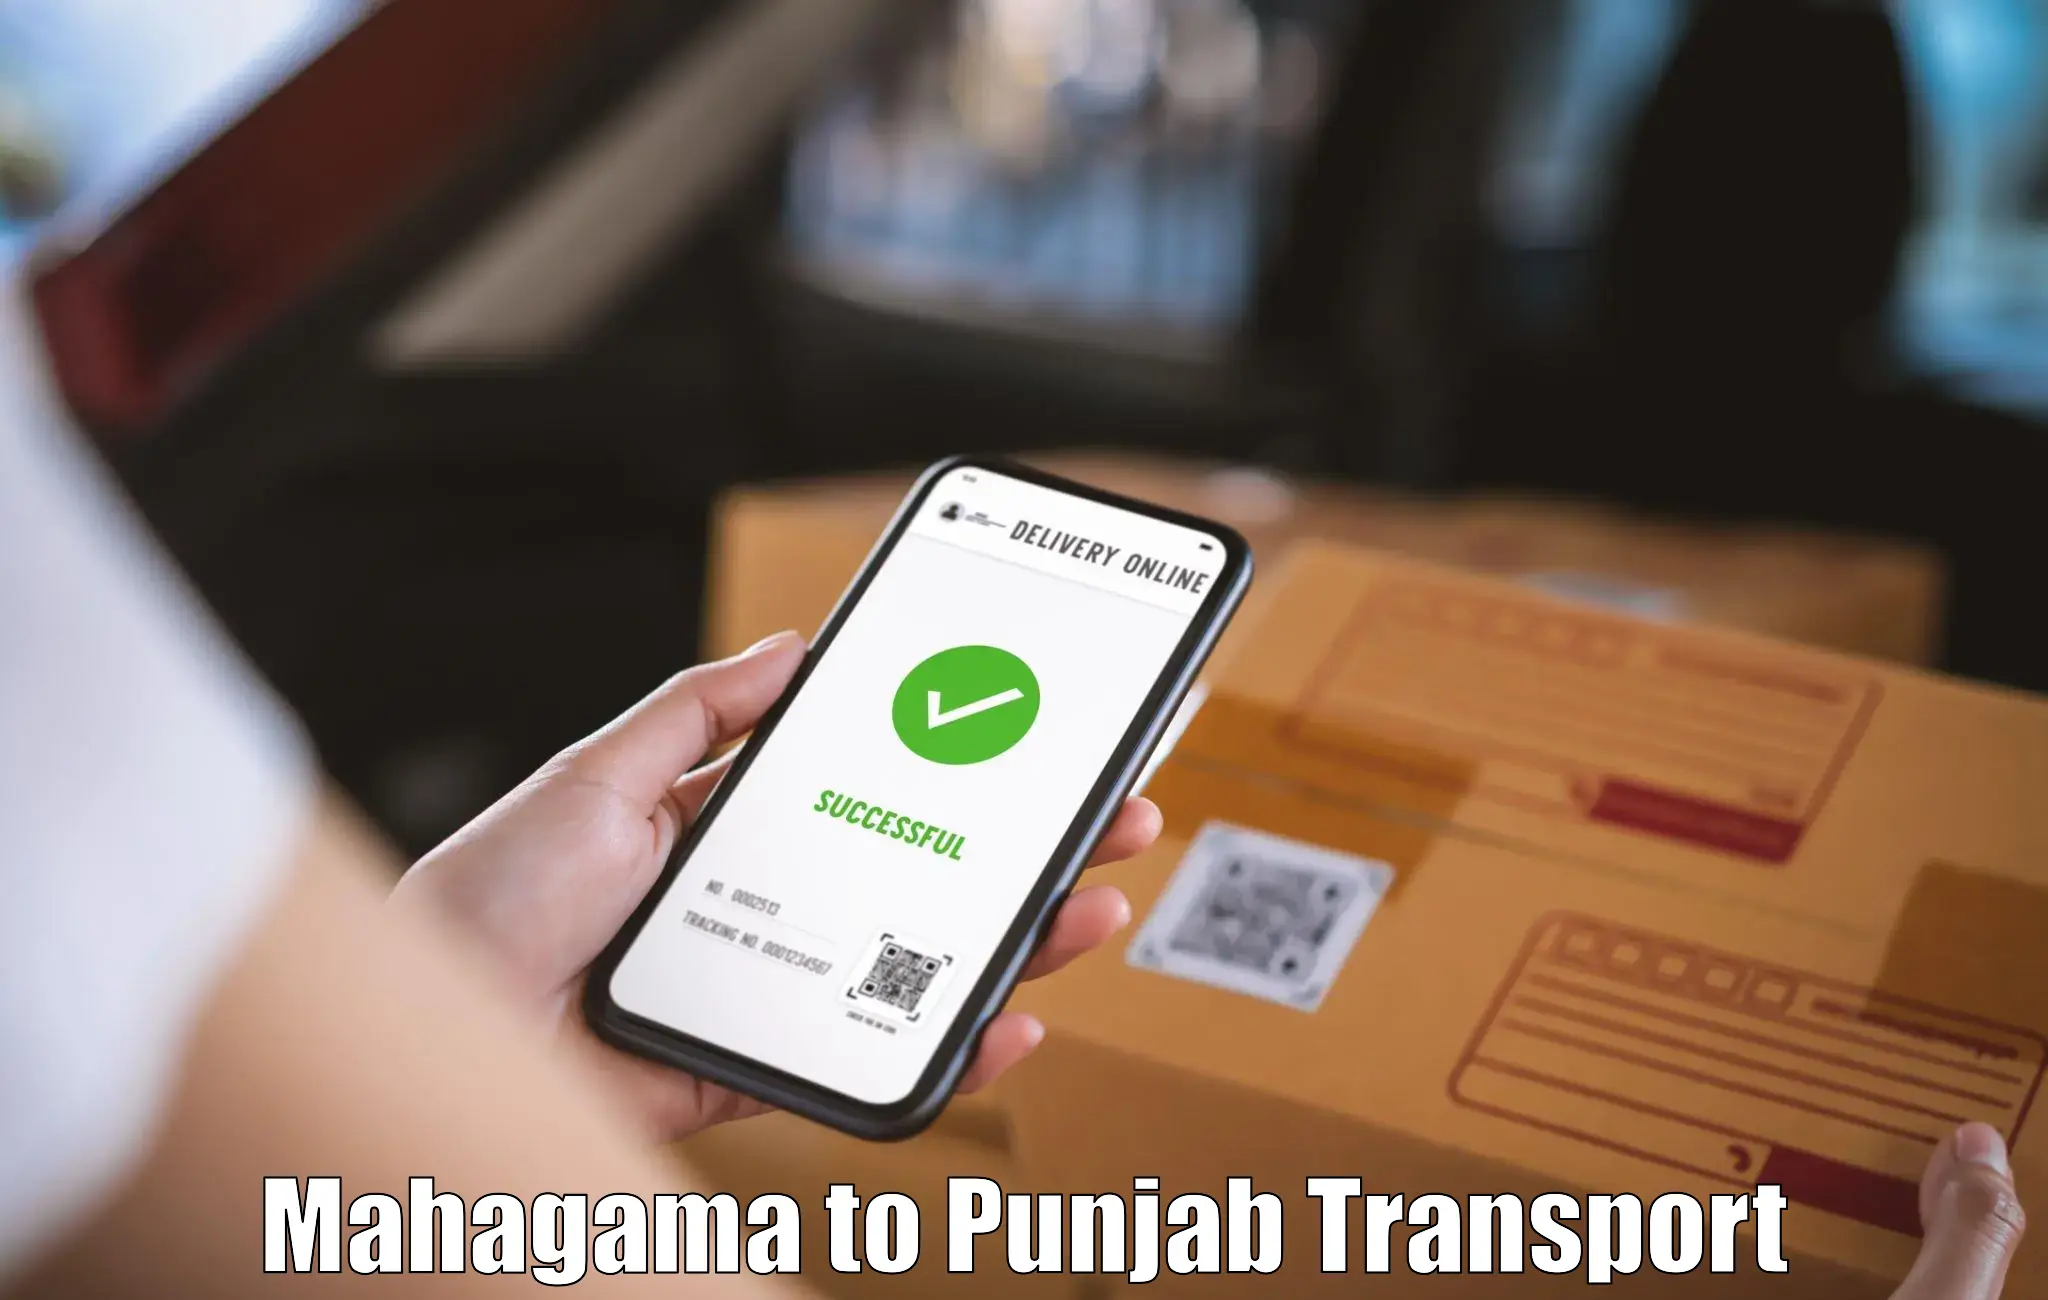 Daily transport service Mahagama to Dinanagar